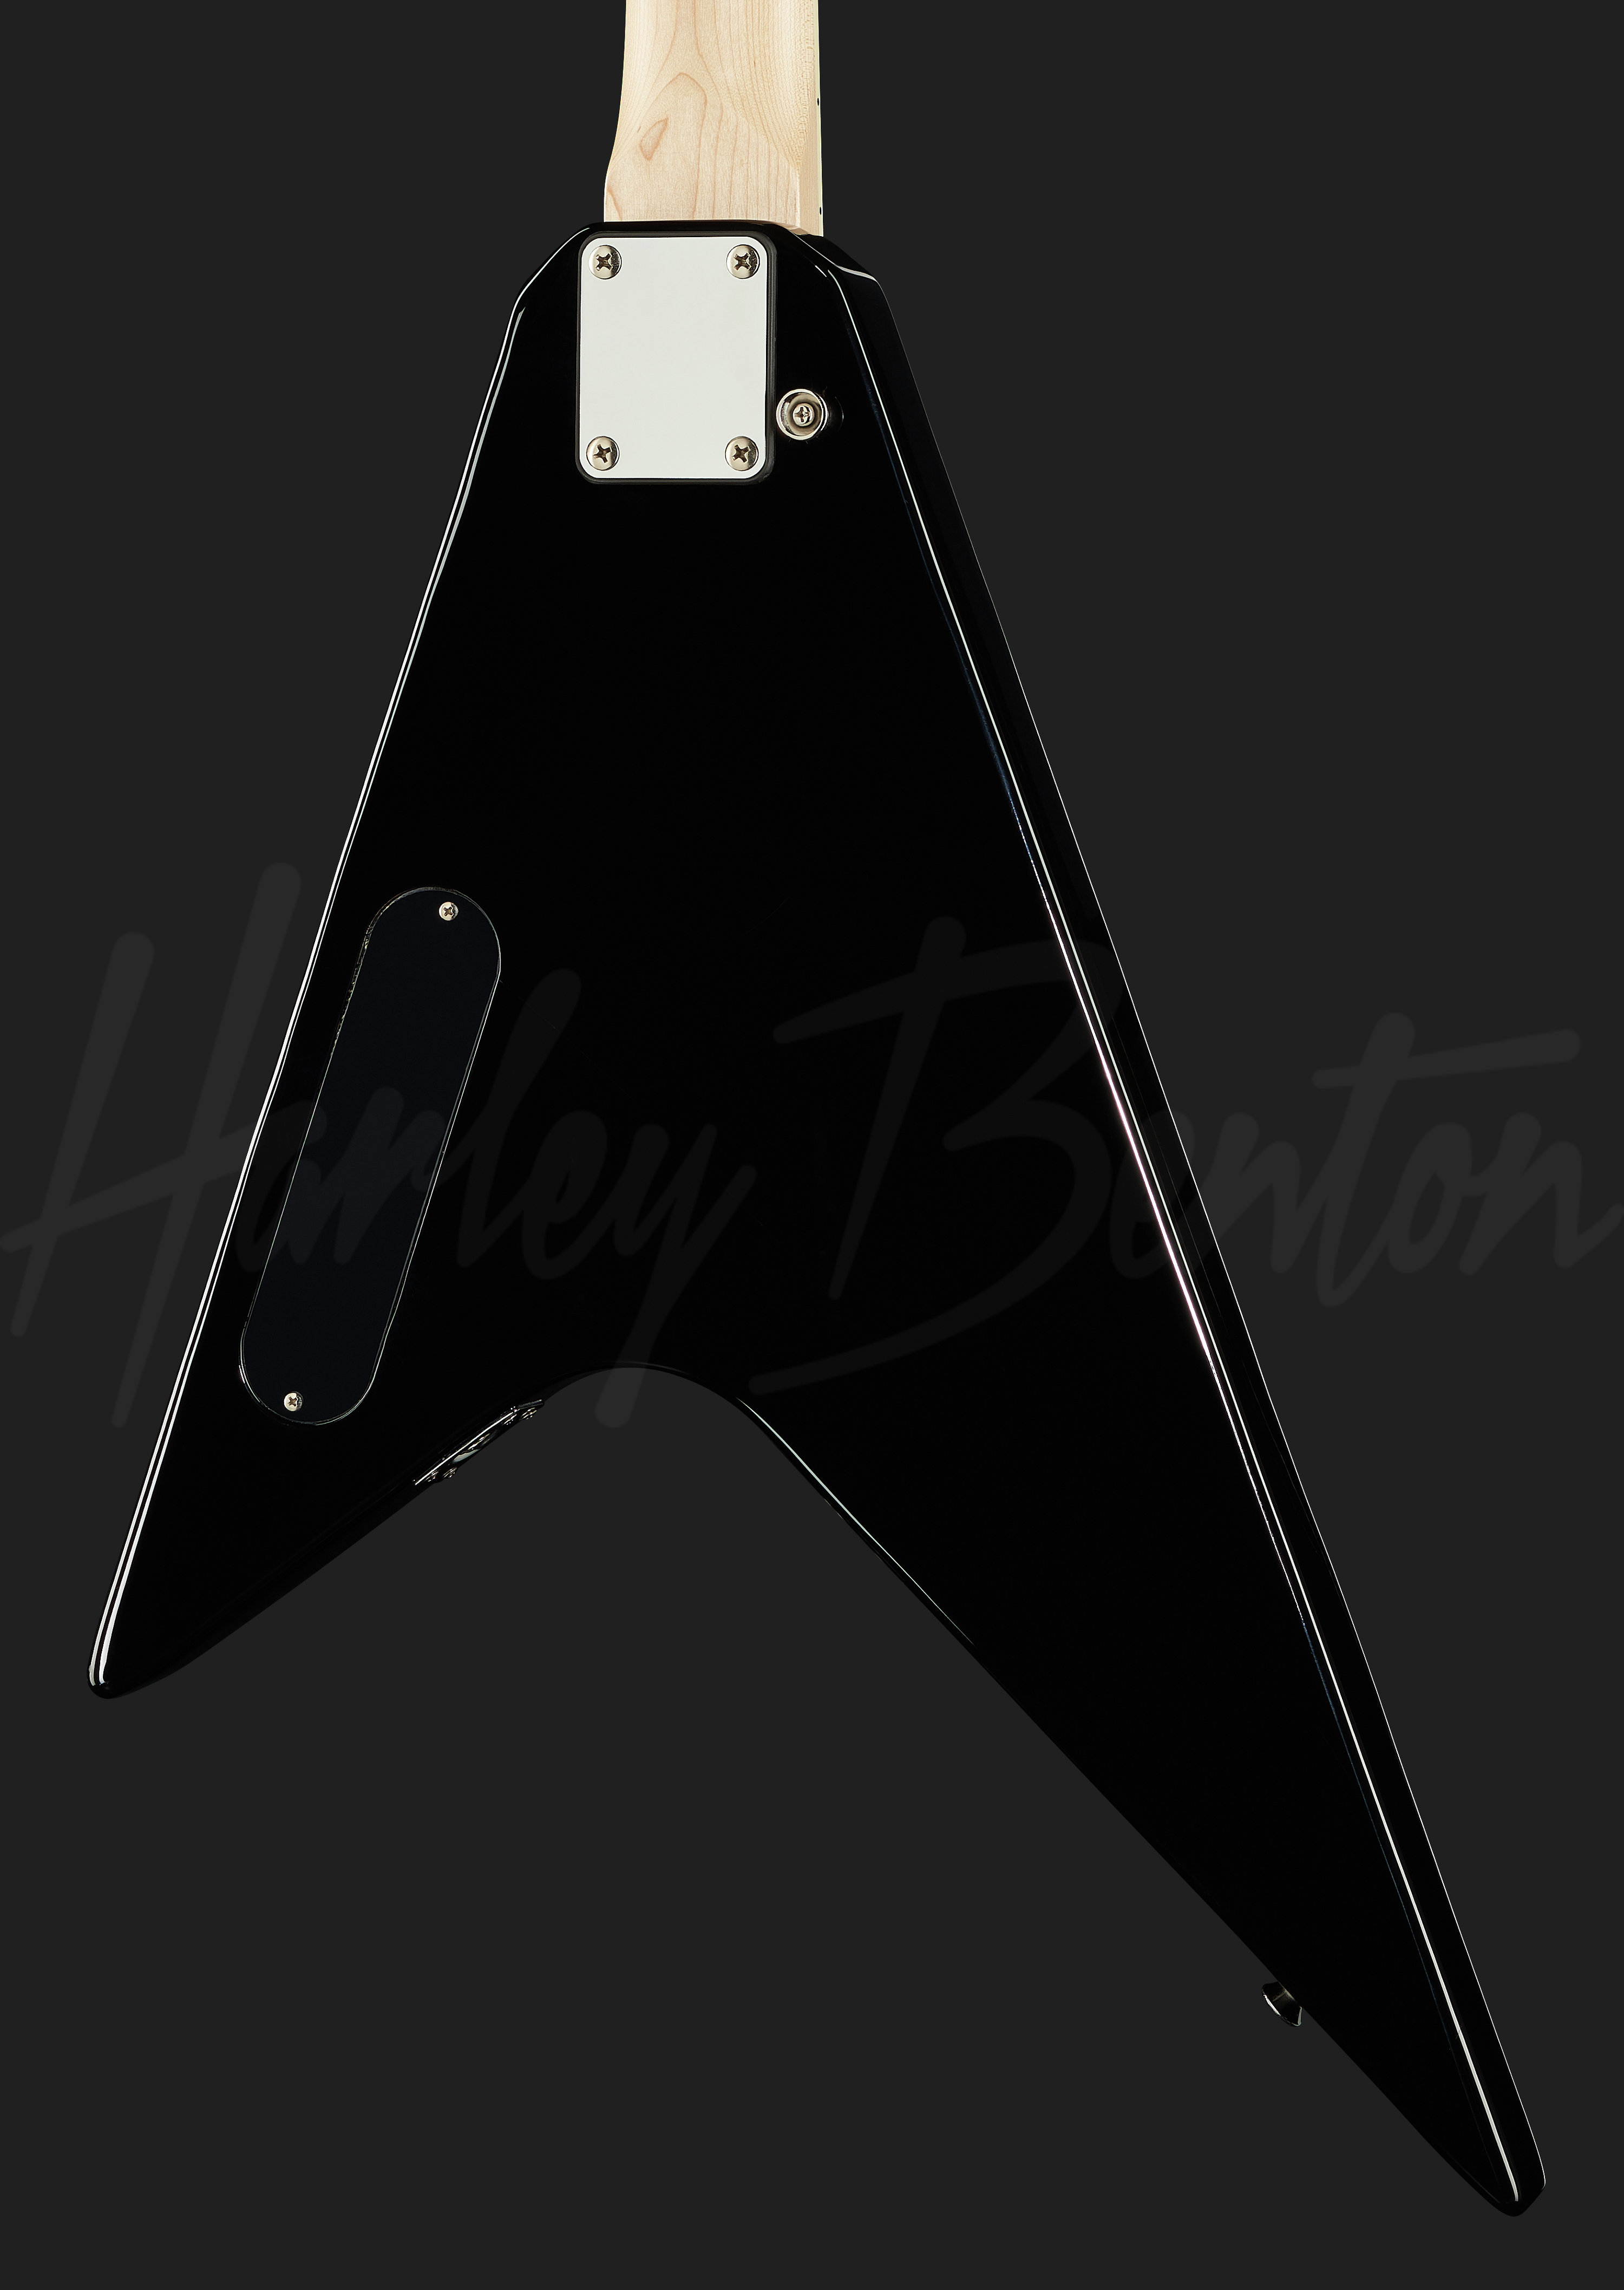 Gitara elektryczna Harley Benton RX-10 BK typ V-ka 15016725259 - Sklepy,  Opinie, Ceny w